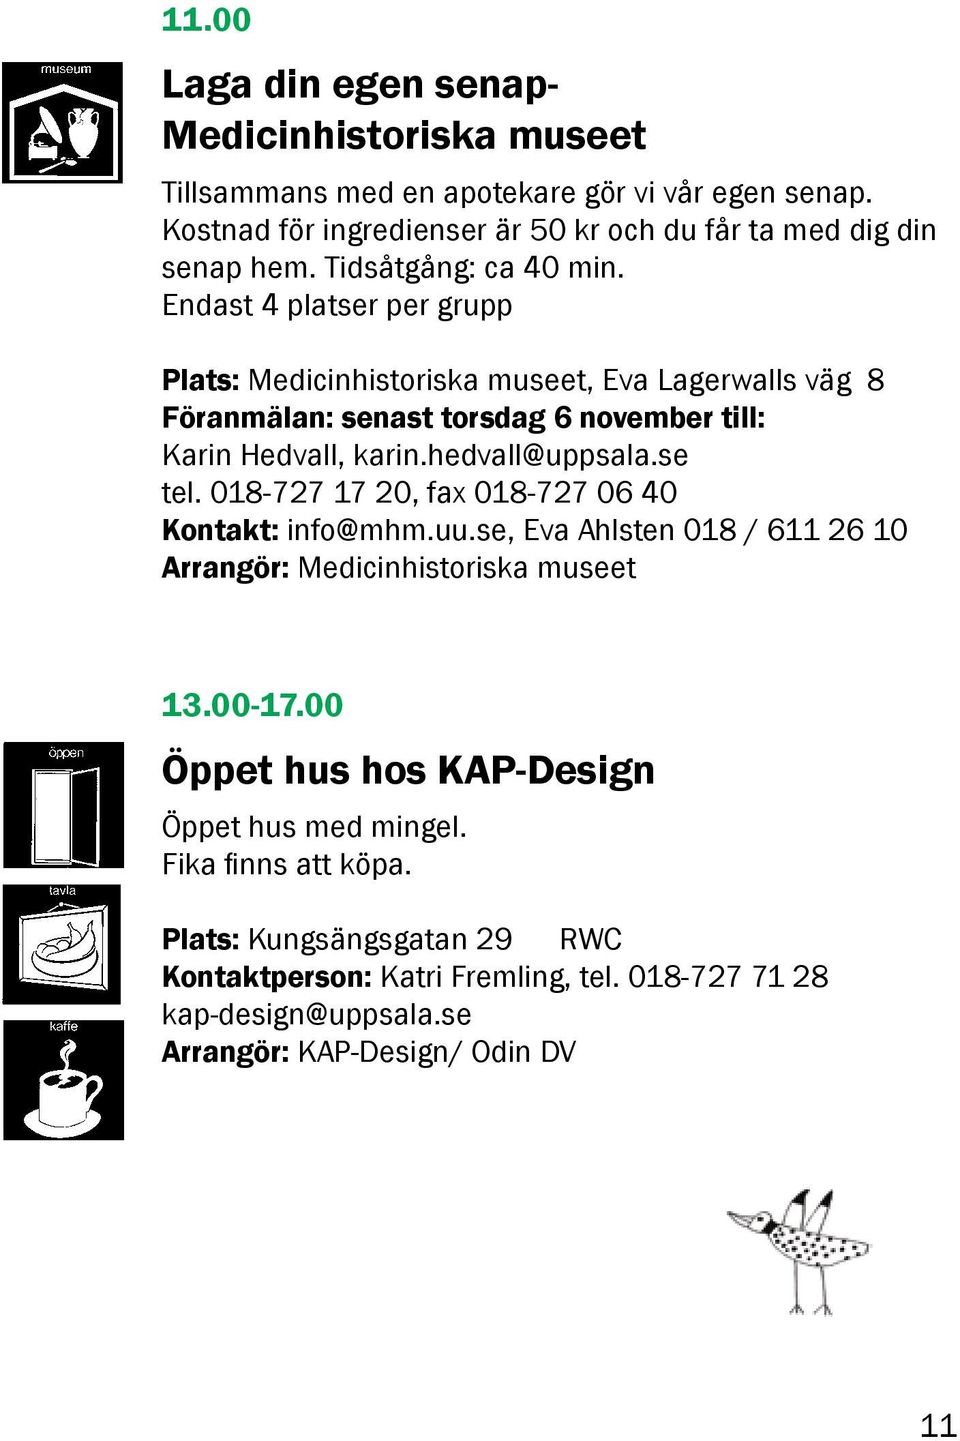 hedvall@uppsala.se tel. 018-727 17 20, fax 018-727 06 40 Kontakt: info@mhm.uu.se, Eva Ahlsten 018 / 611 26 10 Arrangör: Medicinhistoriska museet 13.00-17.